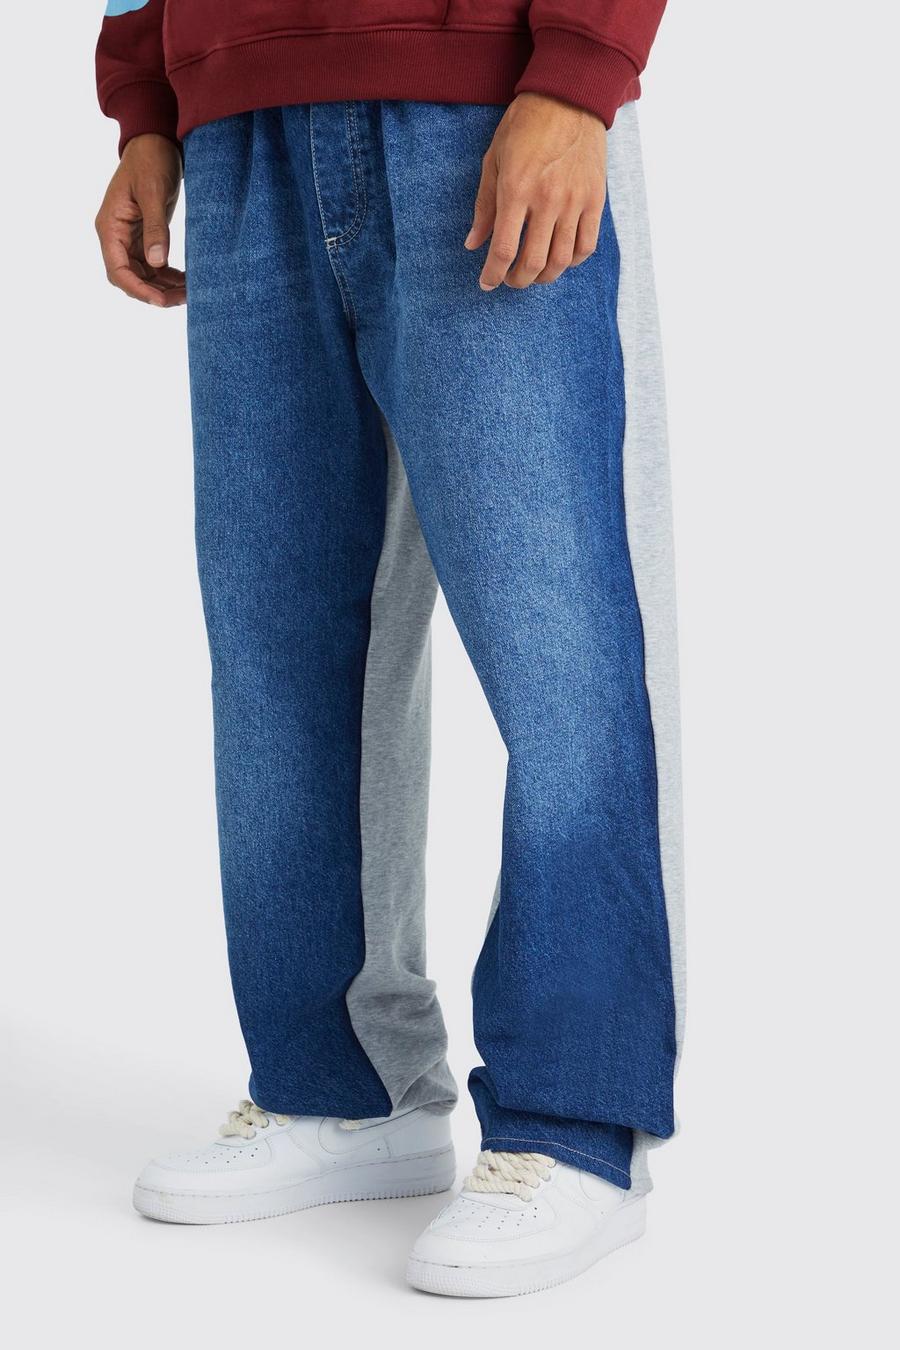 Pantalón deportivo Tall holgado con cintura elástica y estampado híbrido, Dark blue